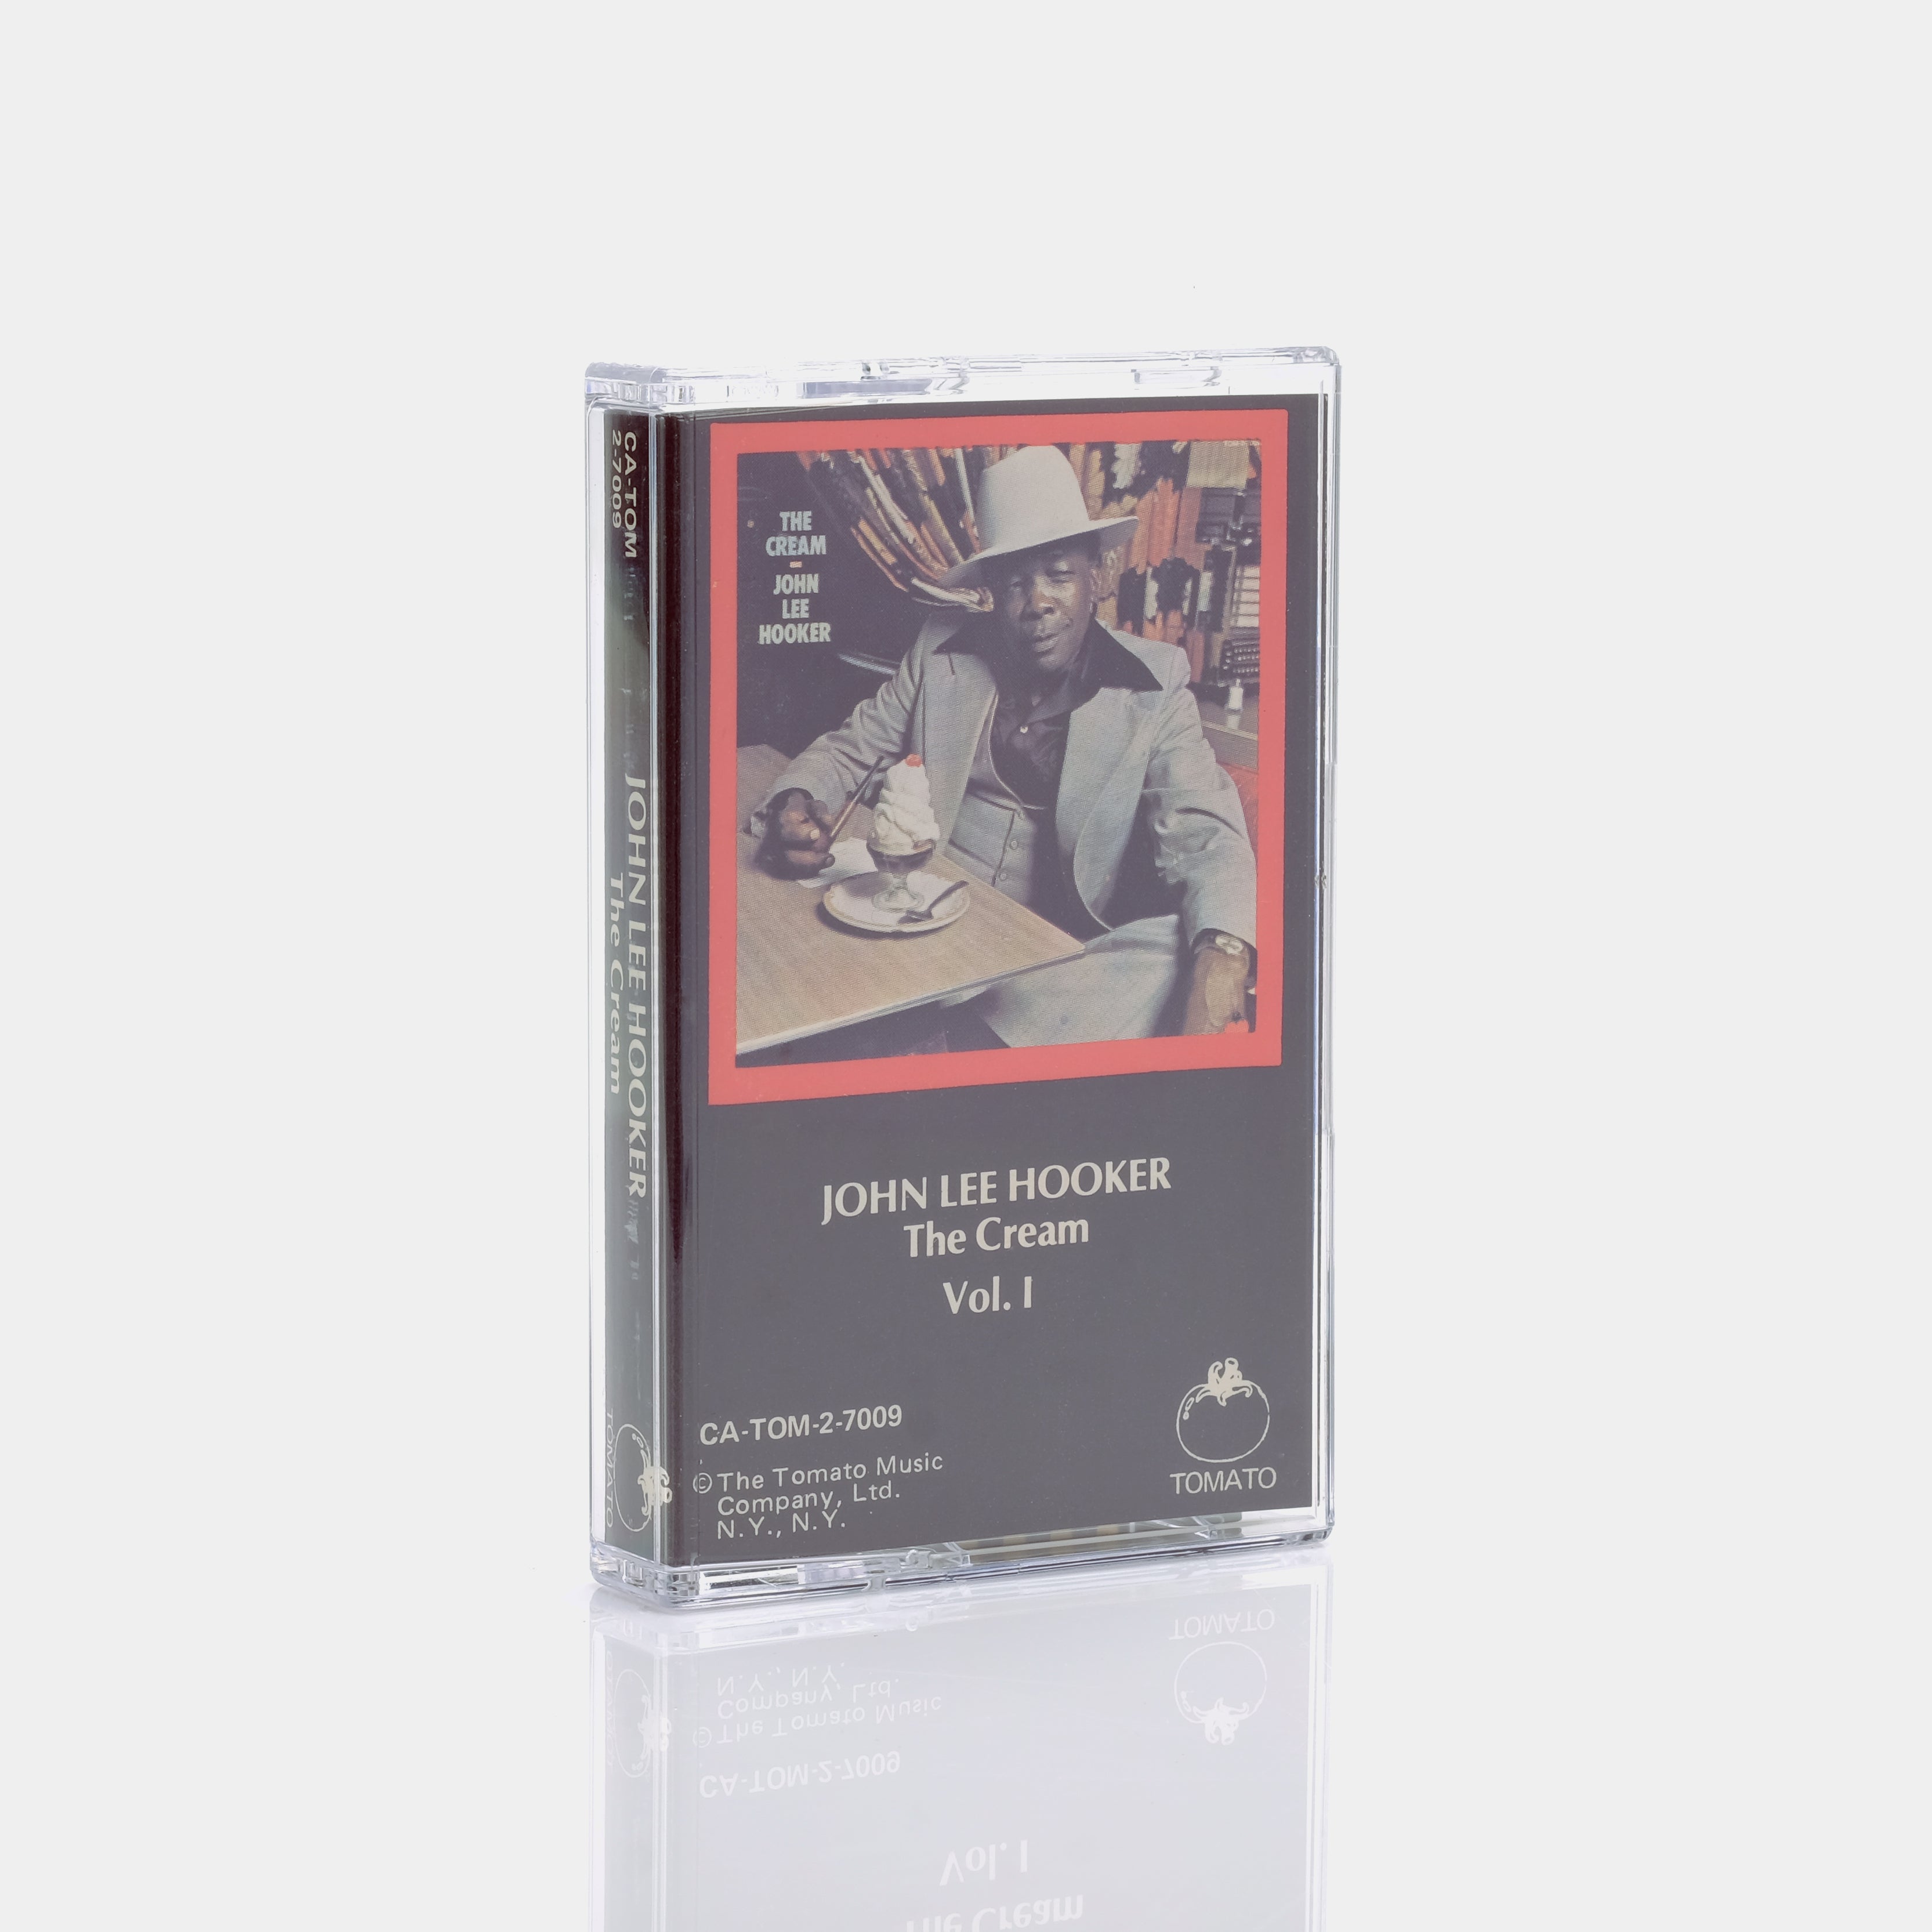 John Lee Hooker - The Cream Vol. I Cassette Tape